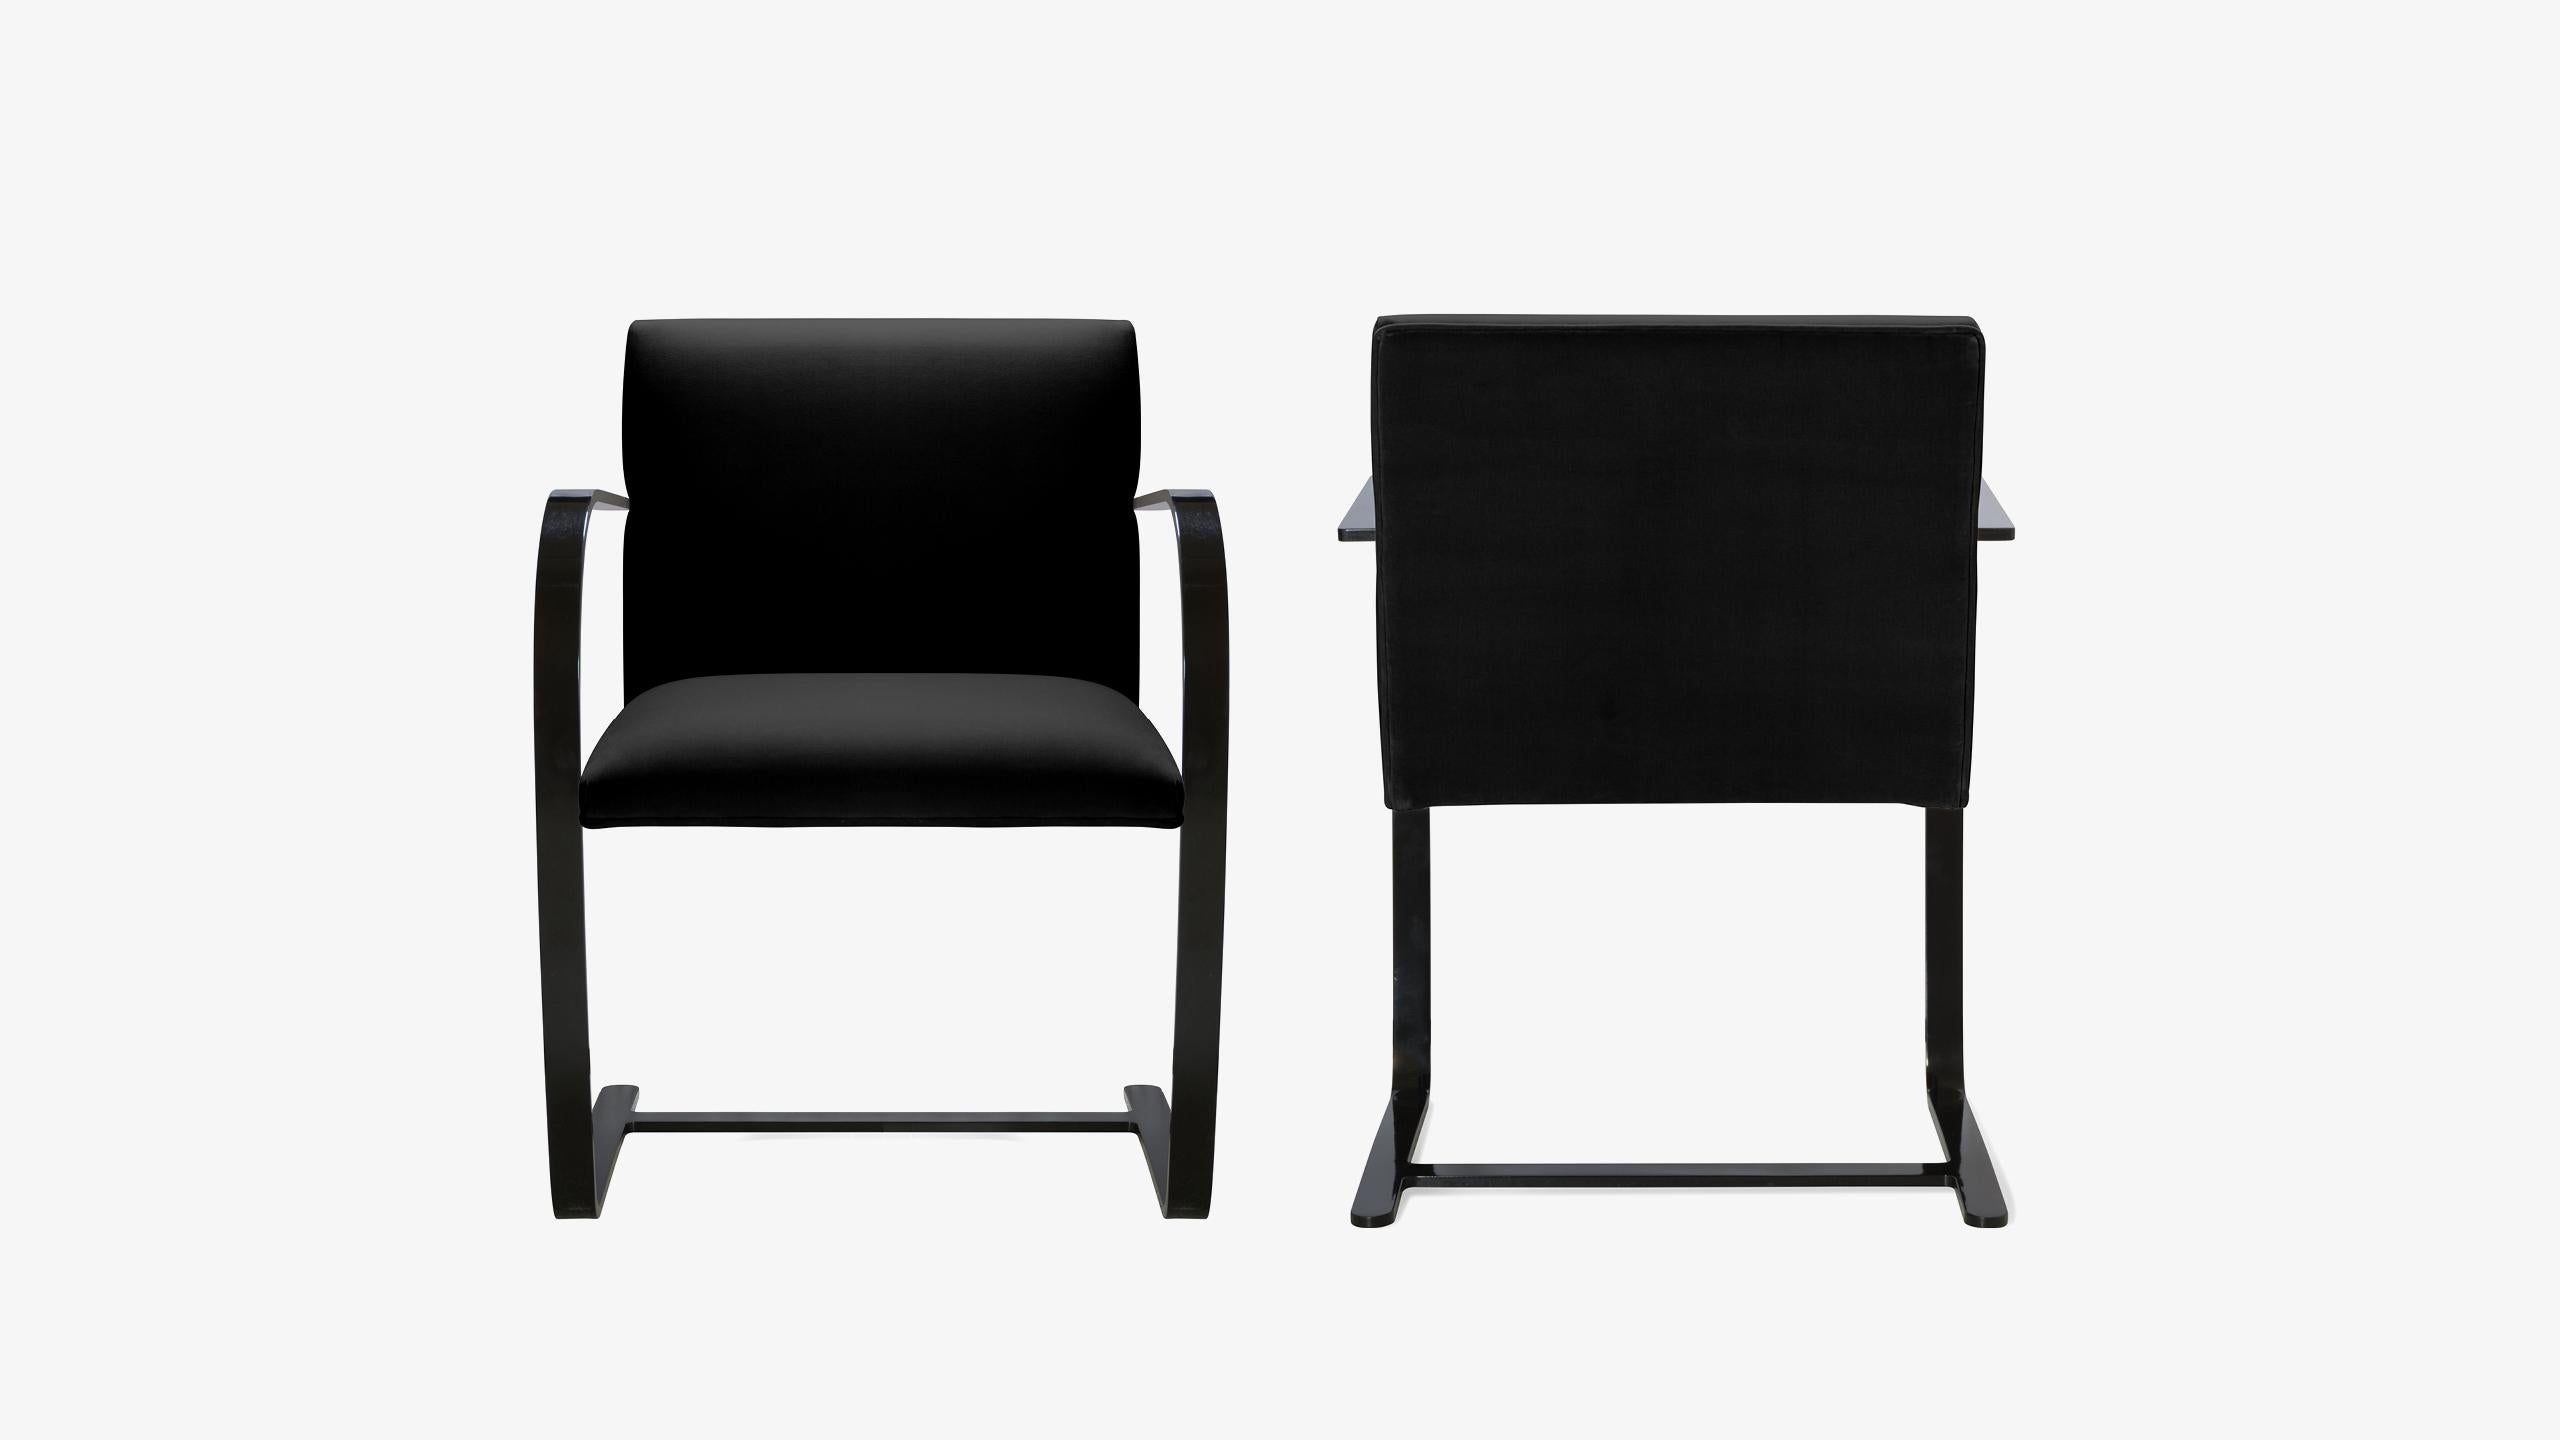 La définition du minimalisme dans un design singulier, réalisé par le grand Ludwig Mies van der Rohe en 1929 ; la chaise à barreau plat de Brno est exactement cela. Nous avons édité ces itérations contemporaines authentiques d'une manière qui n'a